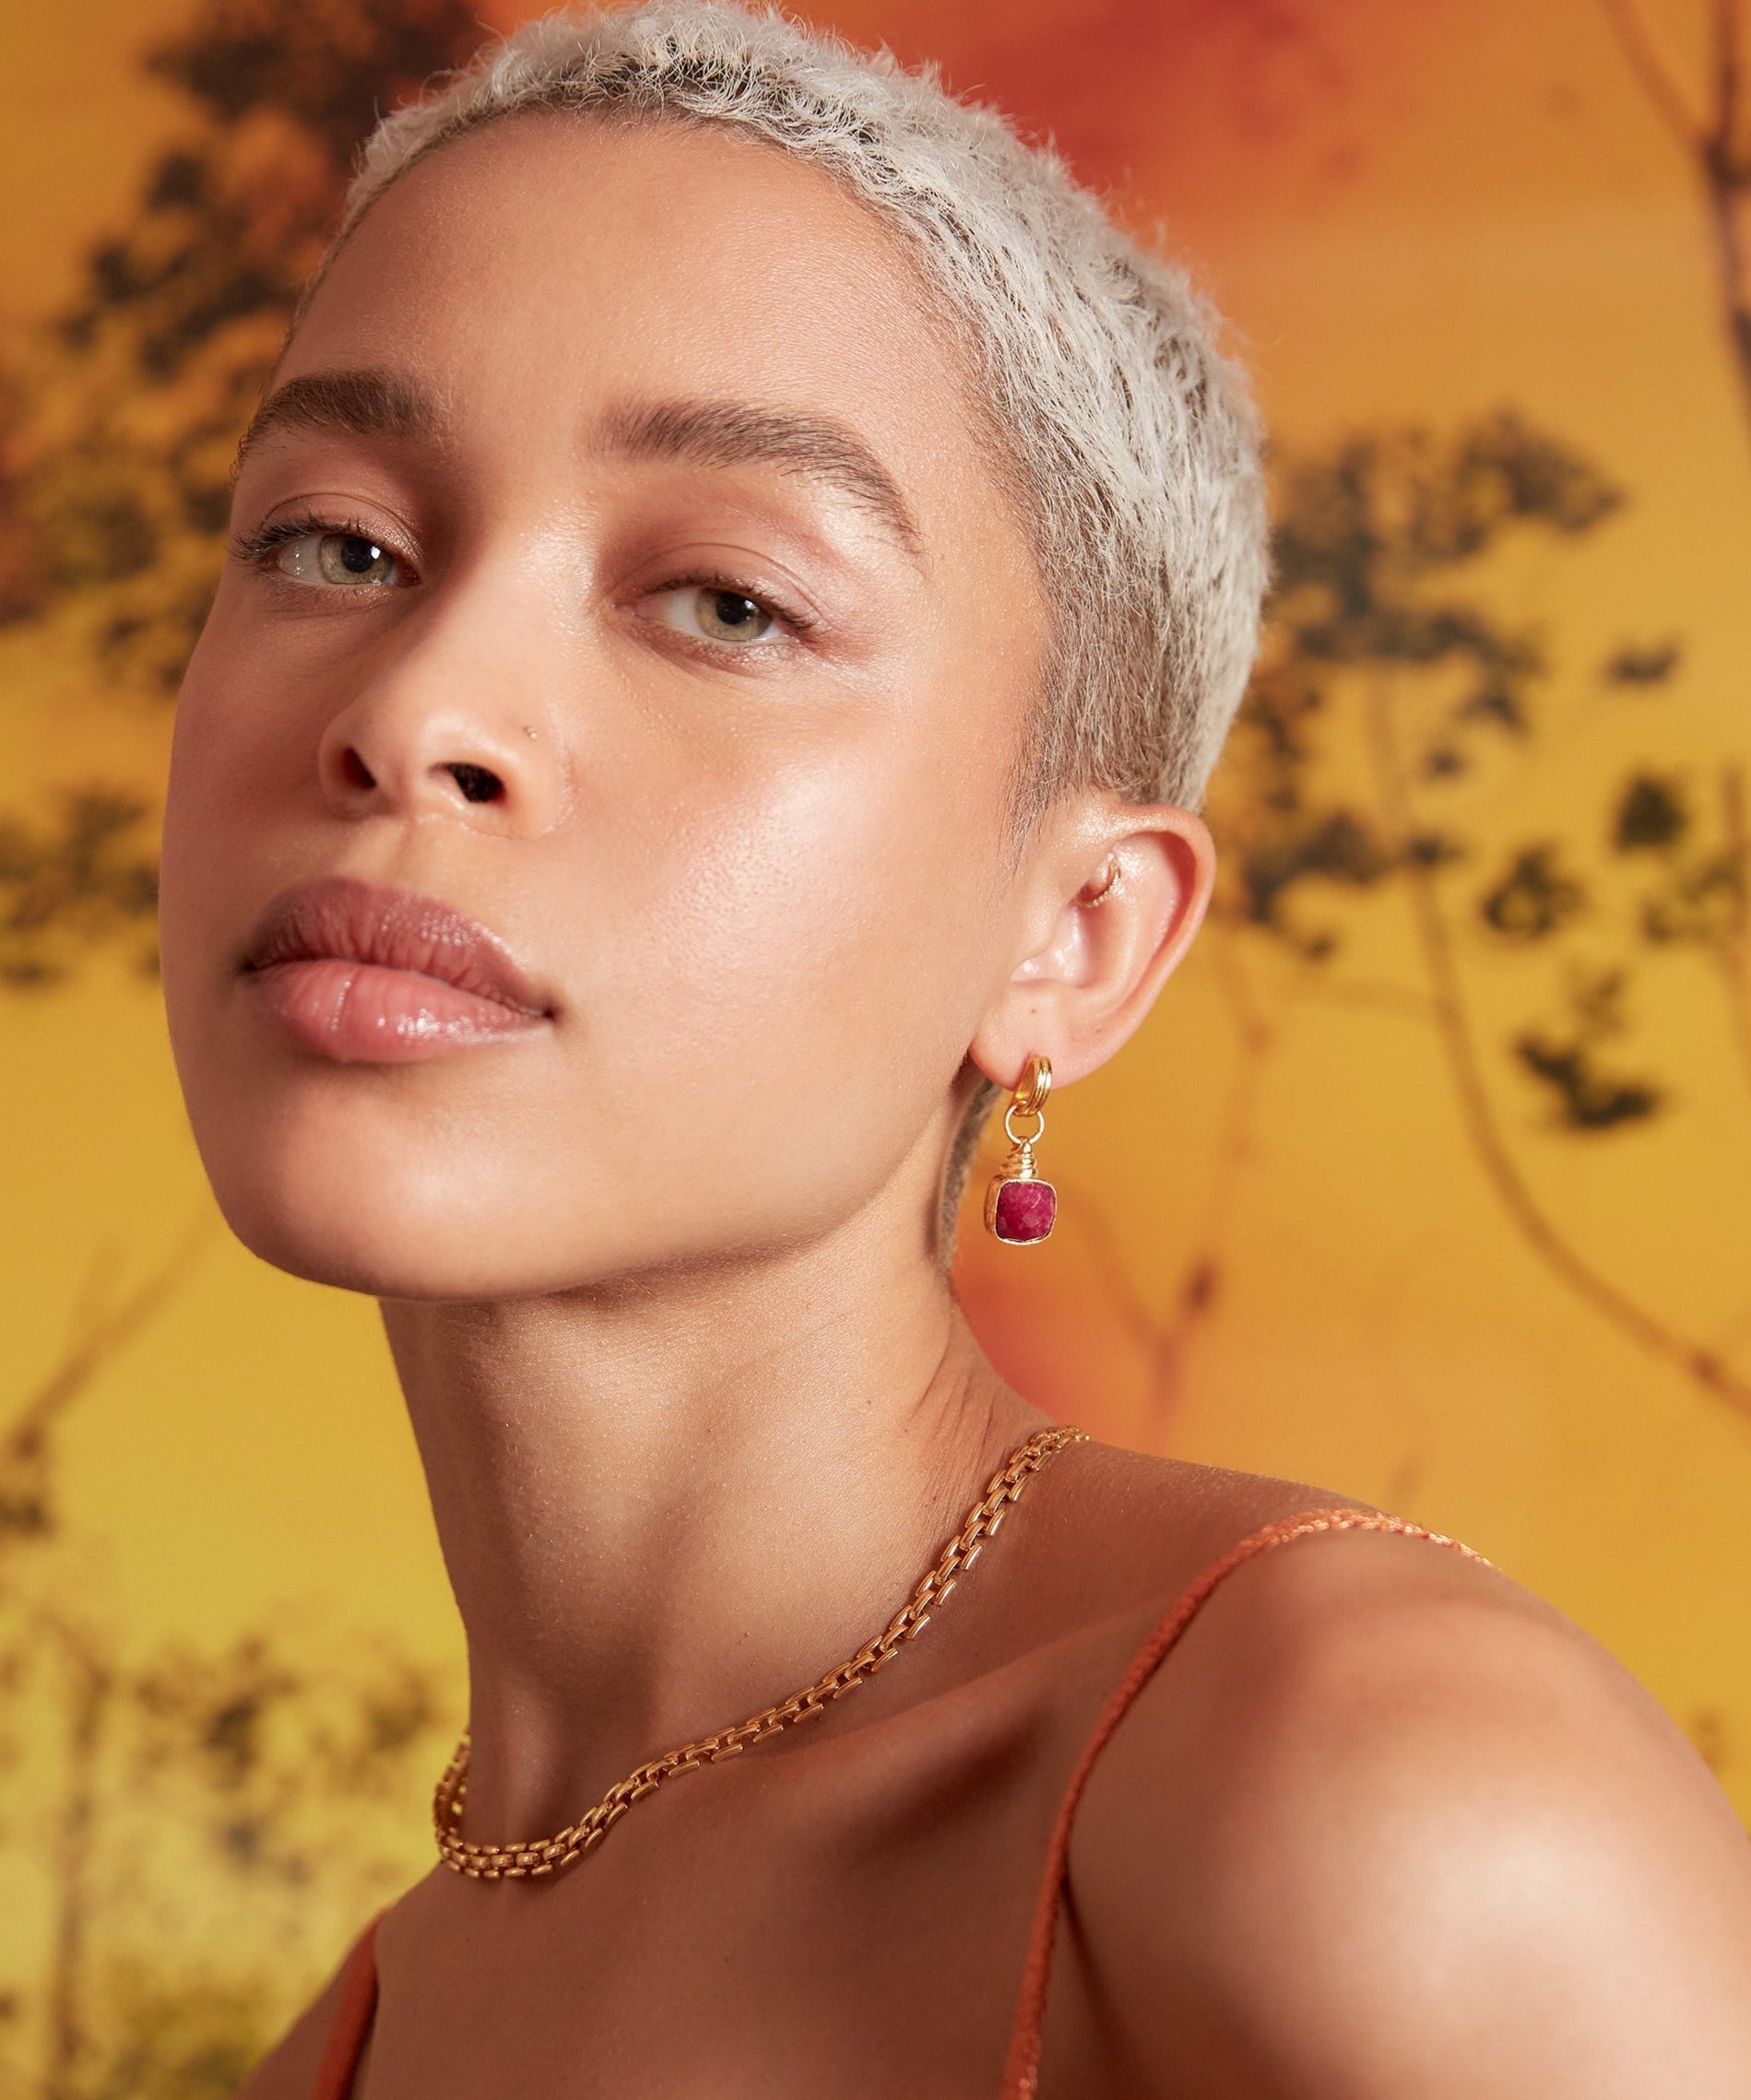 Eleanor Ruby Drop Stud Earrings | Sustainable Jewellery by Ottoman Hands